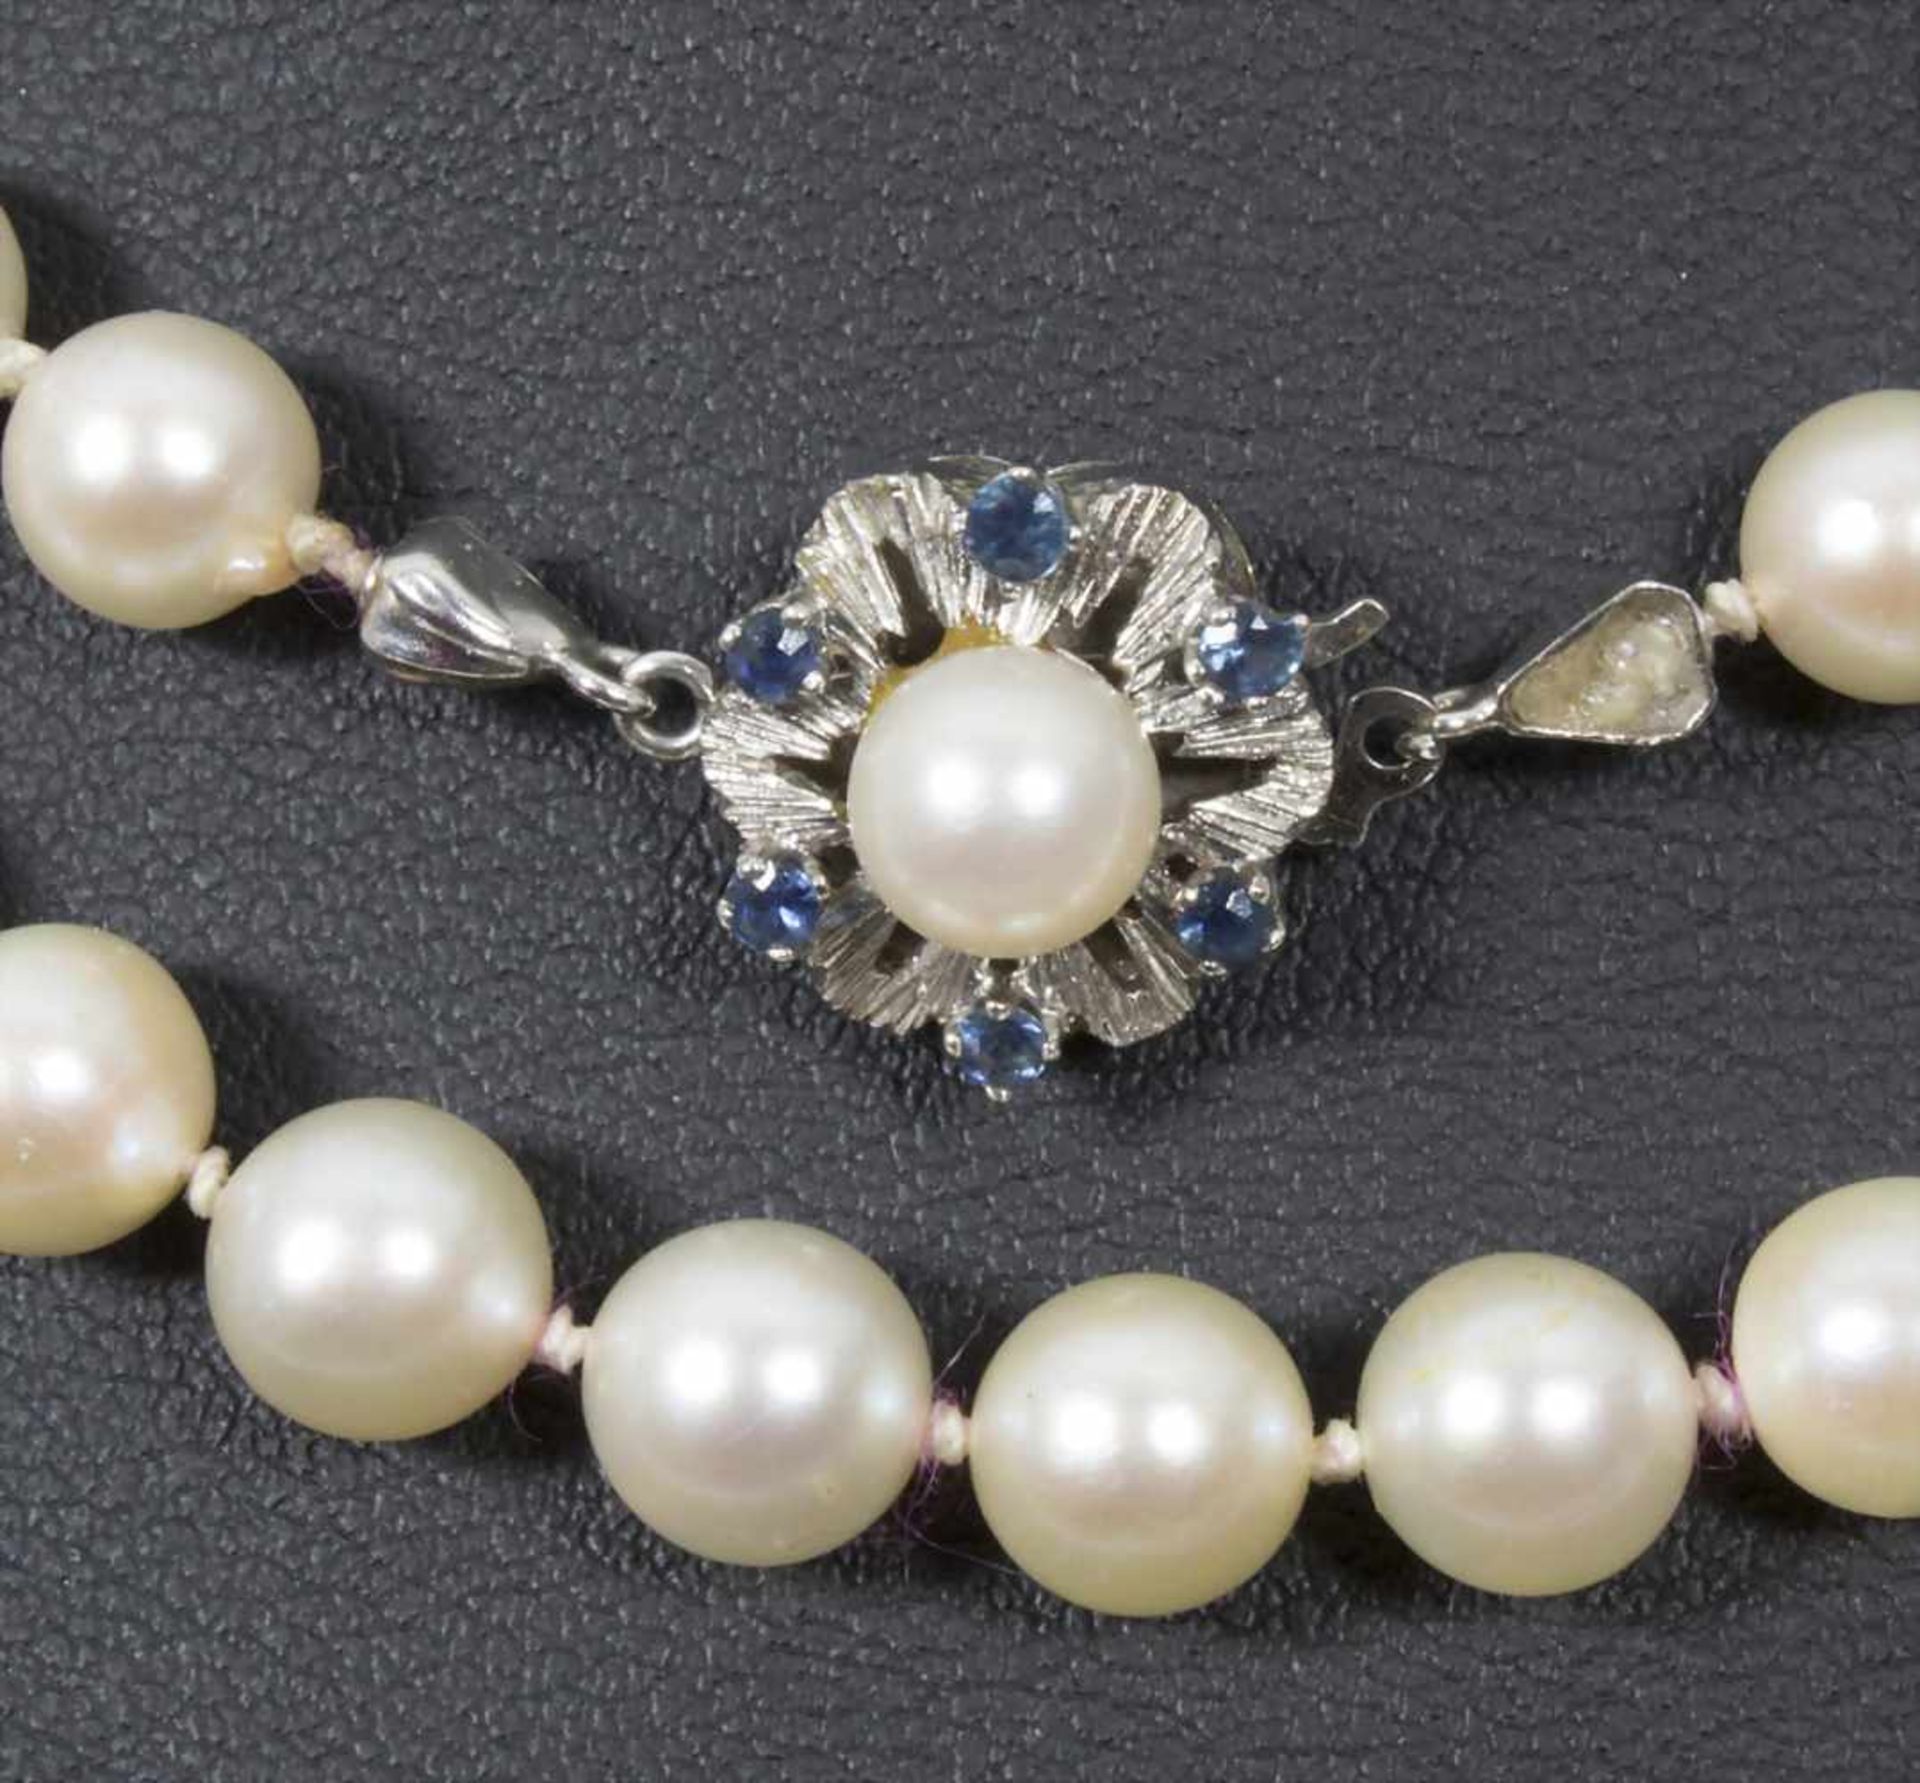 2 Perlenketten / Two pearl necklacesMaterial: Perlen einzeln geknotet, Verschluss Weißgold WG 585/ - Bild 2 aus 5